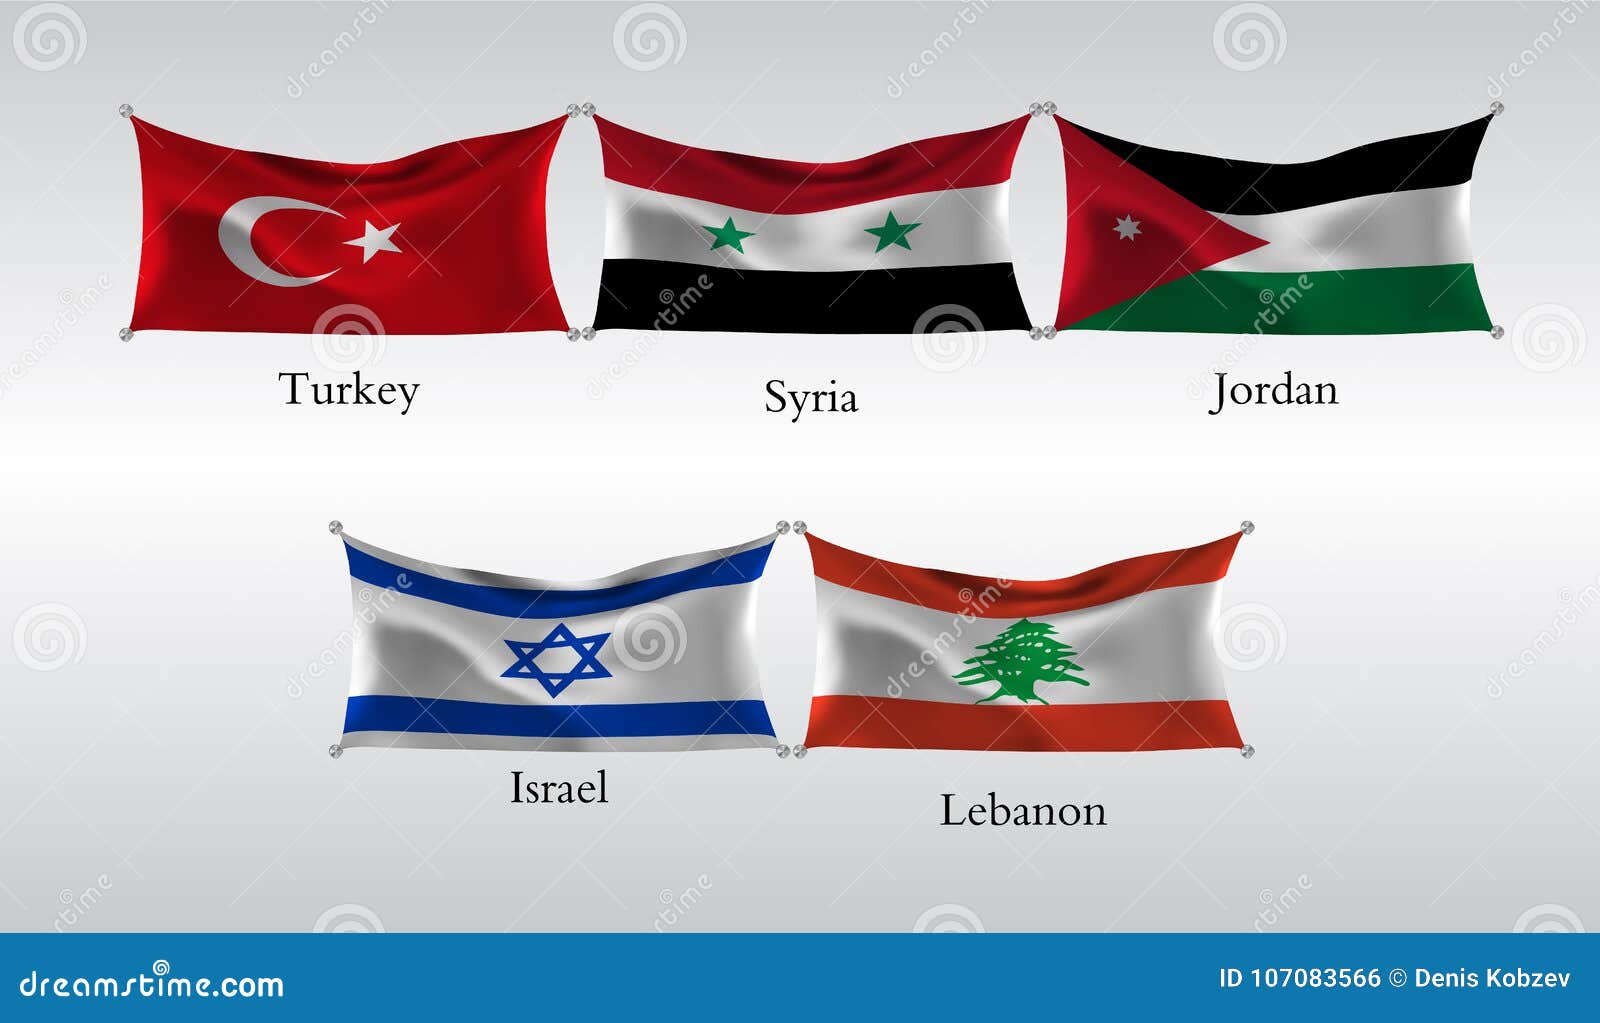 Сколько звезд на флаге турции. Флаг Турции и Сирии. Турция флаг Сирии флаг. Турецкий и сирийский флаг. Турецкая Сирия флаг.